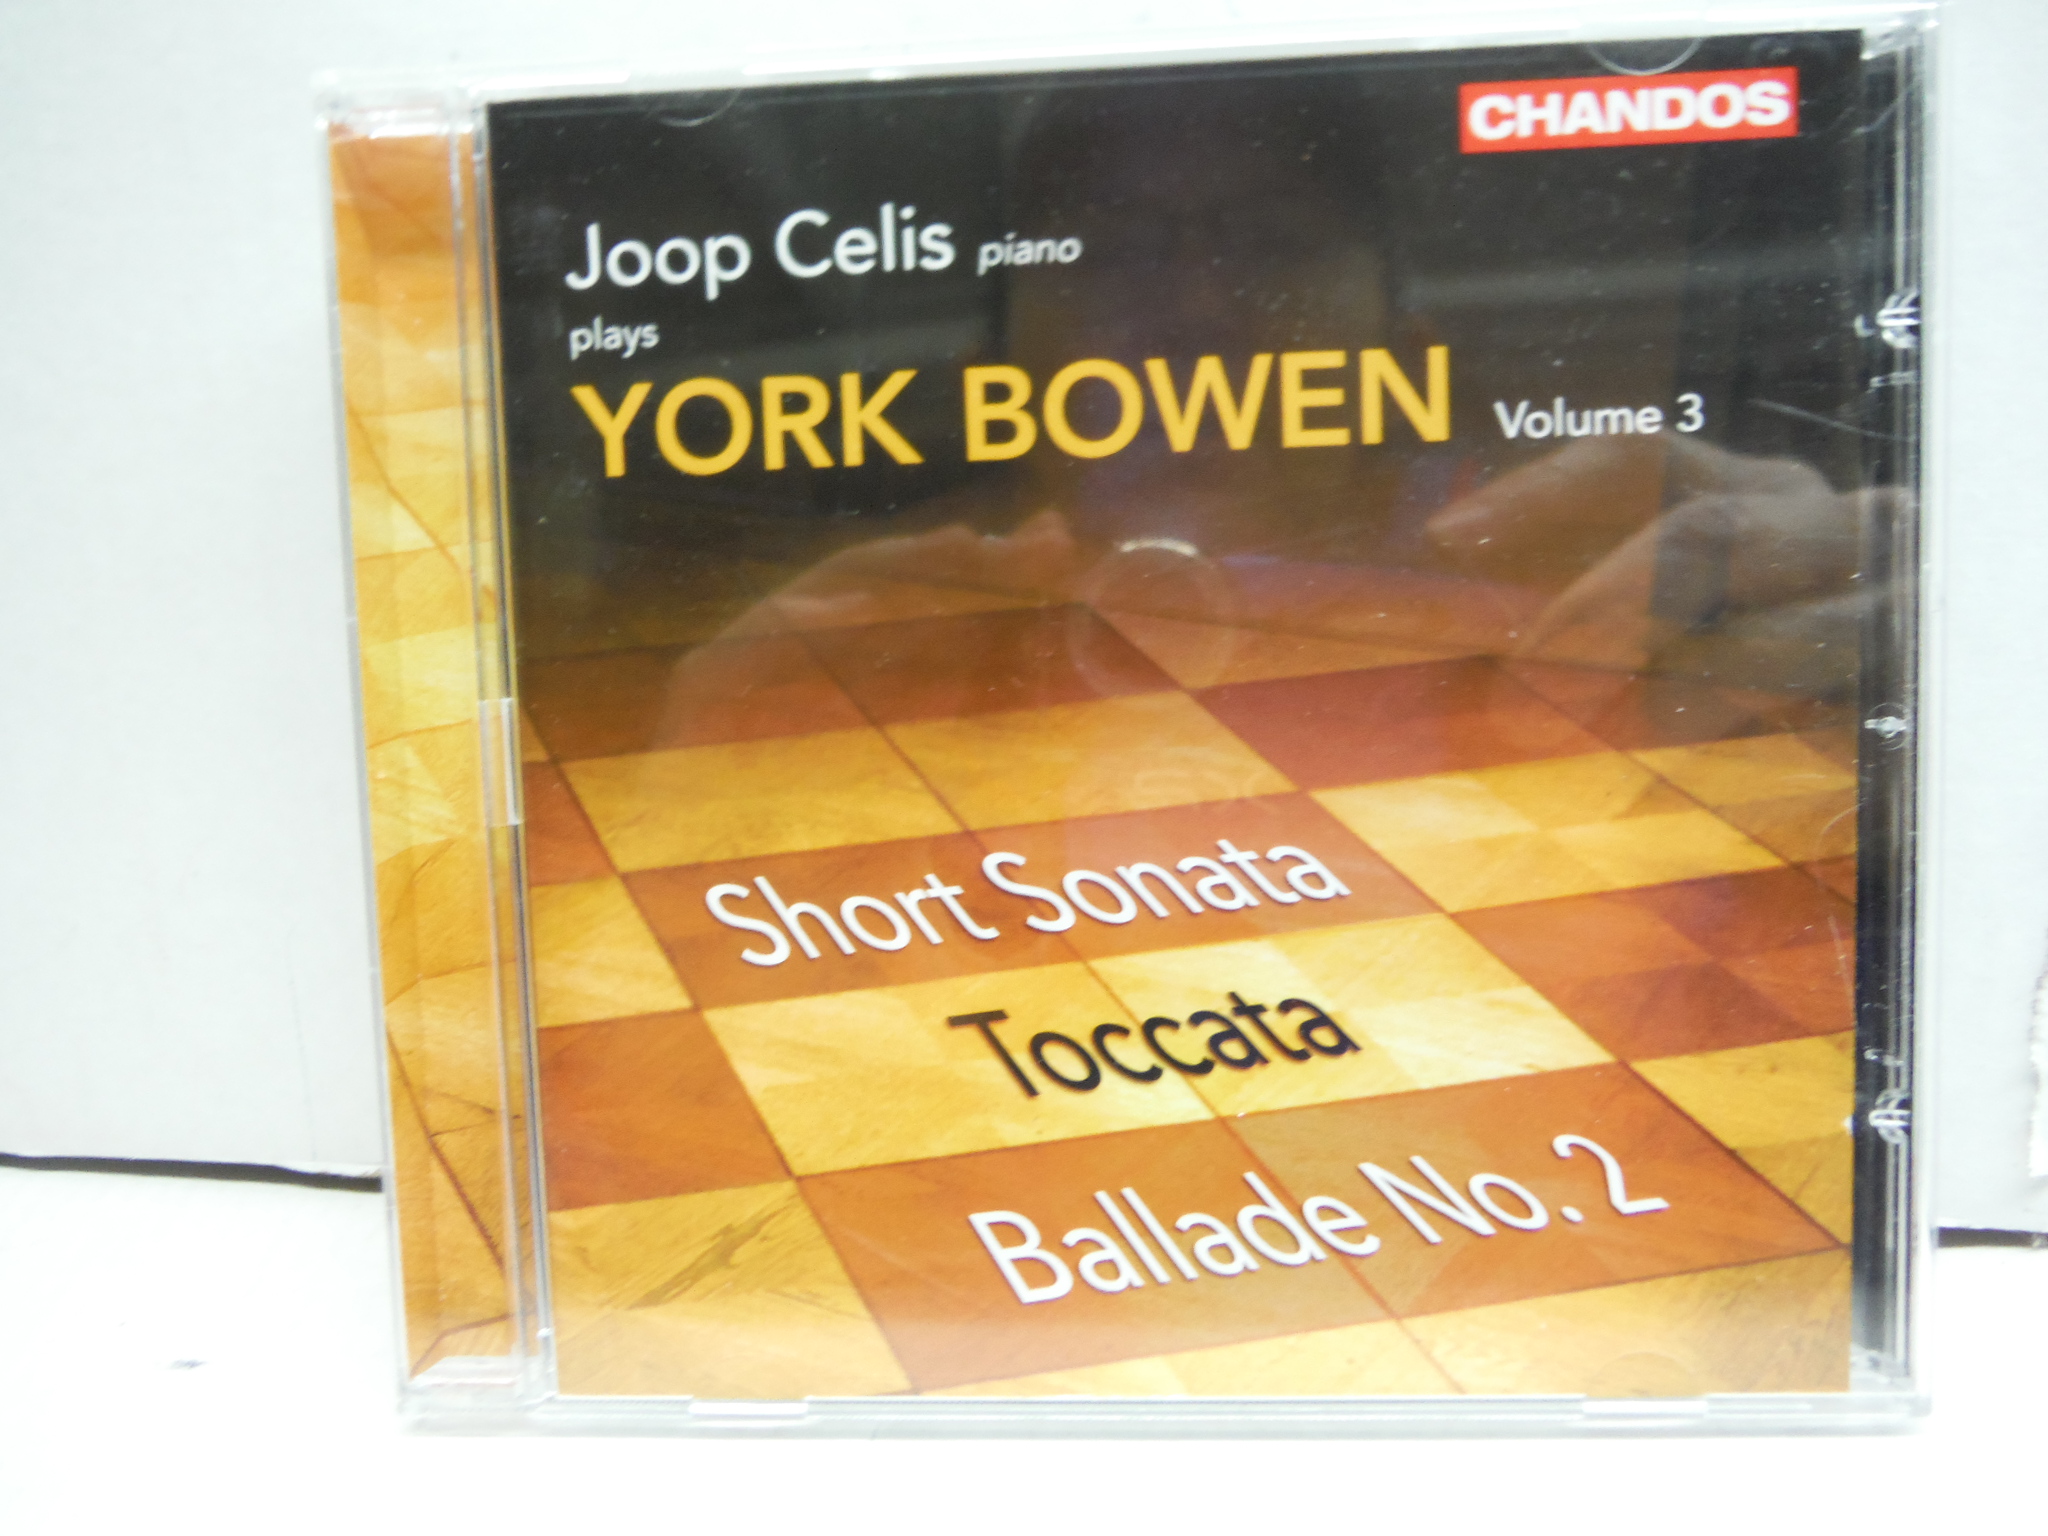 Image 0 of Joop Celis Plays York Bowen - Short Sonata; Toccata; Ballade No. 2 - Vol. 3